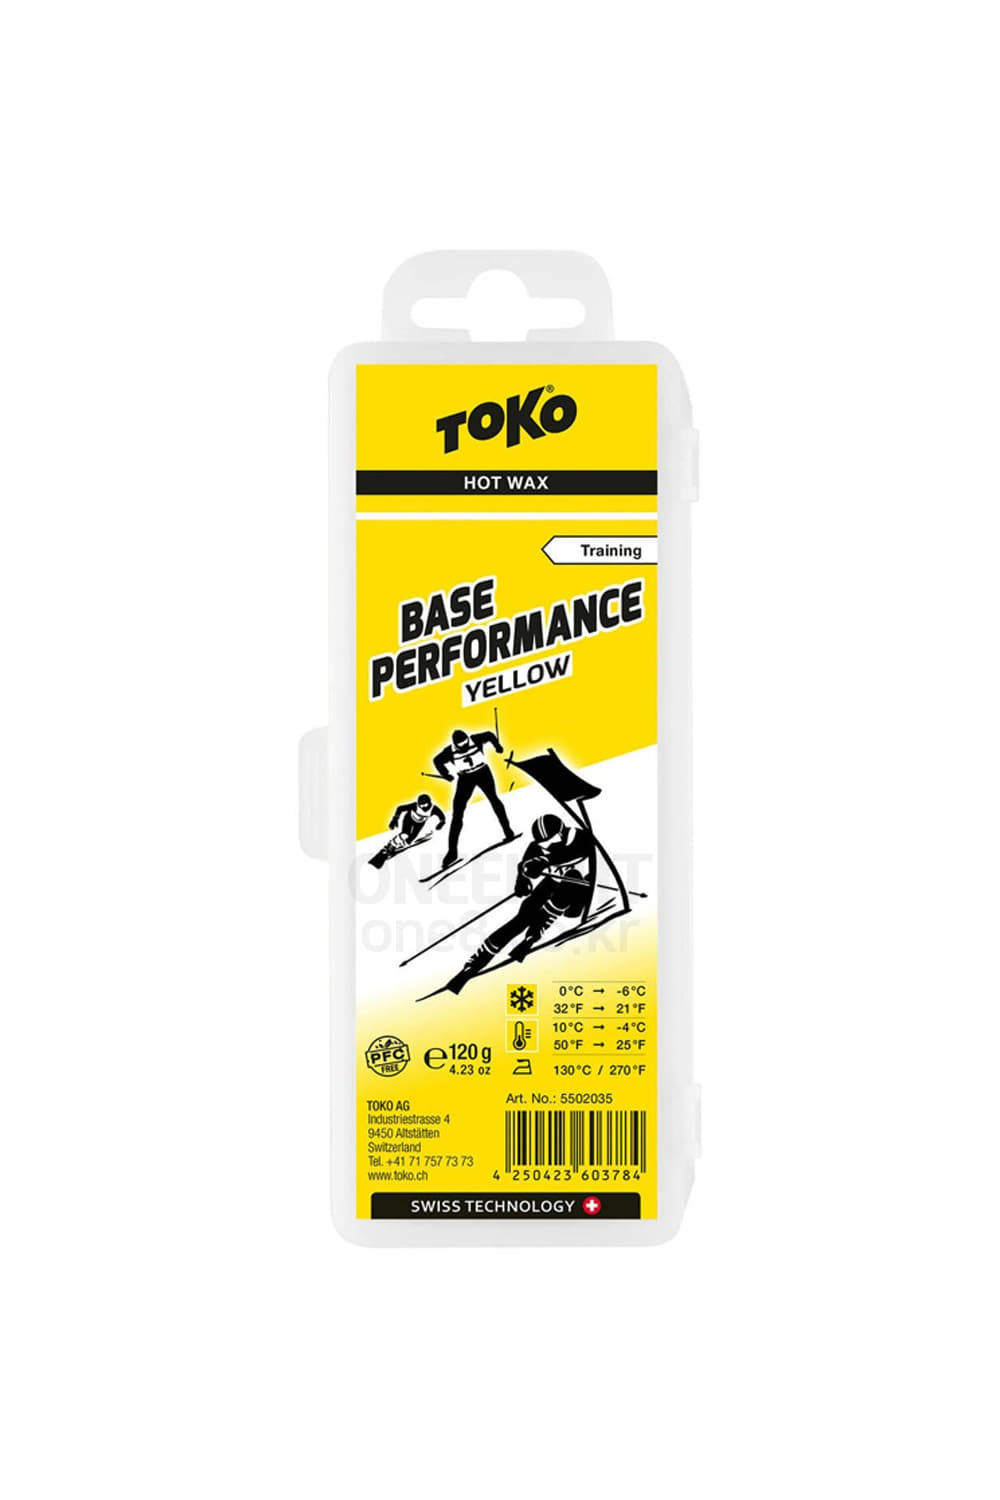 토코 베이스 퍼포먼스 핫 왁스 옐로우 120G TOKO_BASE PERFORMANCE HOT WAX YELLOW 120G(설온 -6~0)_5502035_DHTK21900